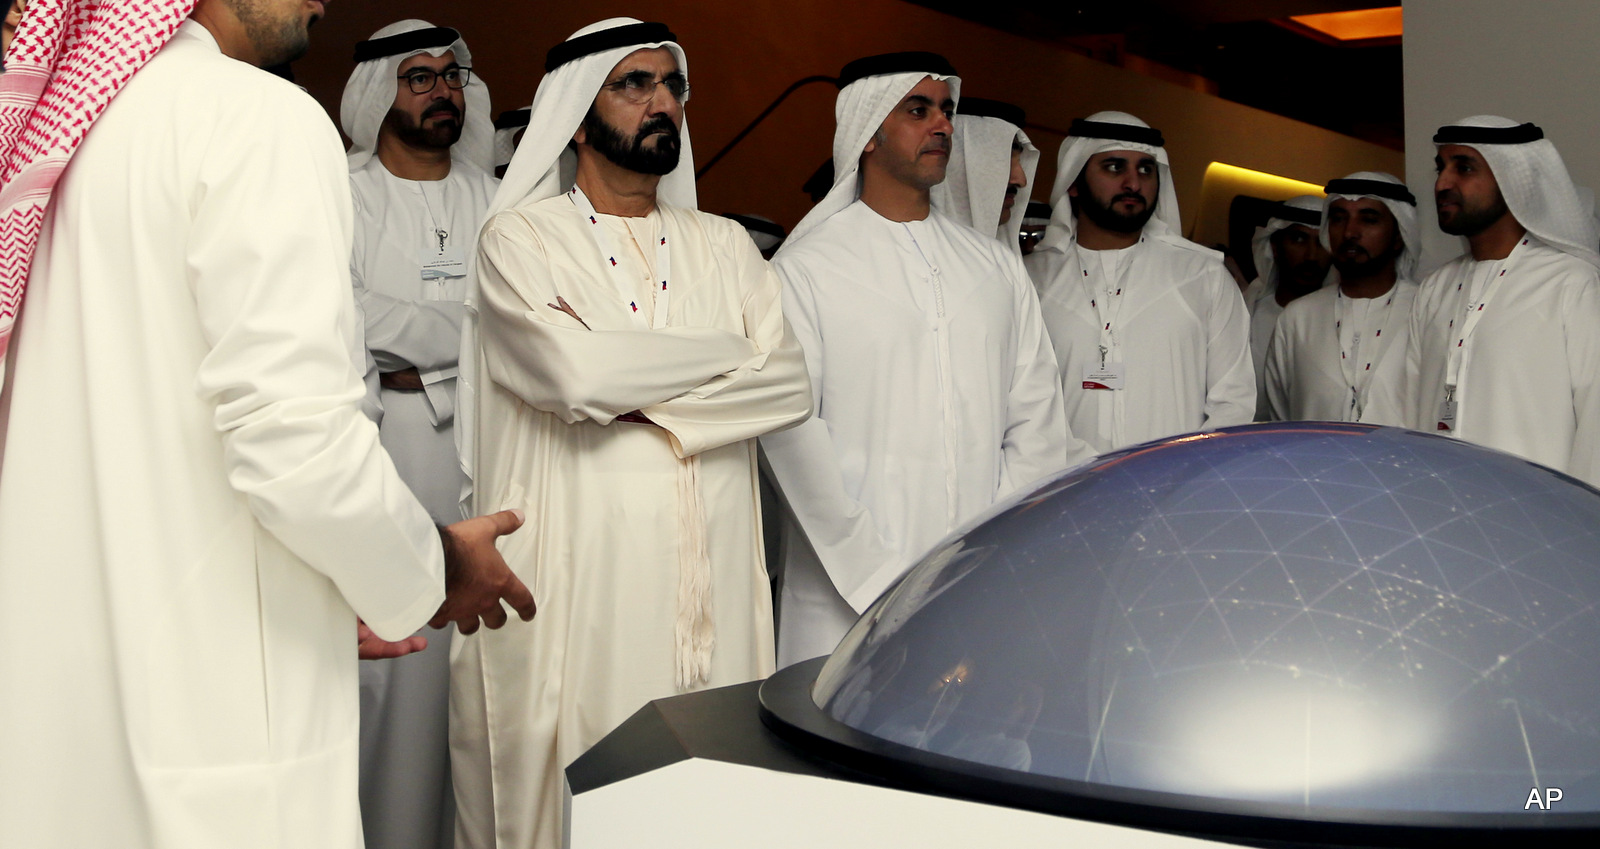 Sheikh Mohammed Bin Rashid Al Maktoum, UAE prime minister and ruler of Dubai, 3rd left, listens to a presenter at the Arab Strategy Forum in Dubai